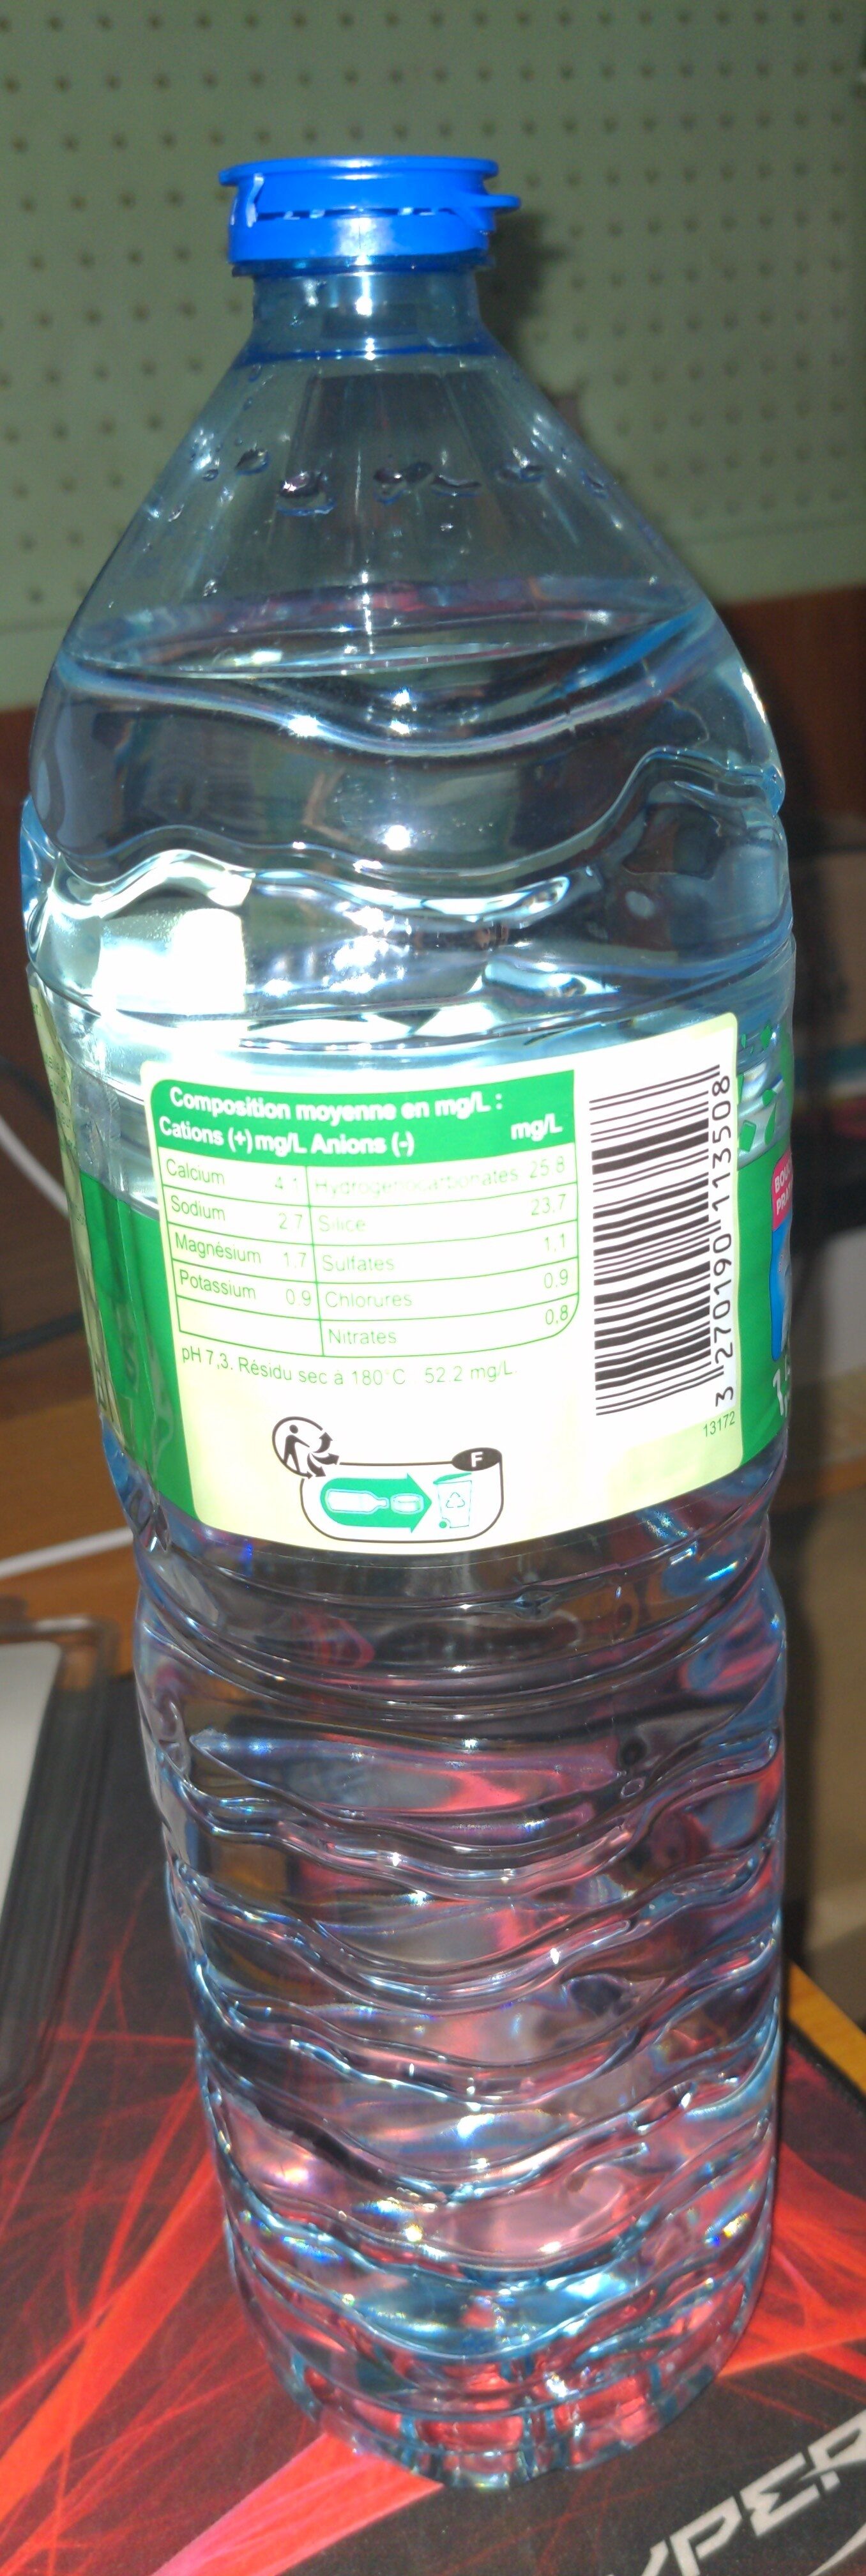 eau de source - Tableau nutritionnel